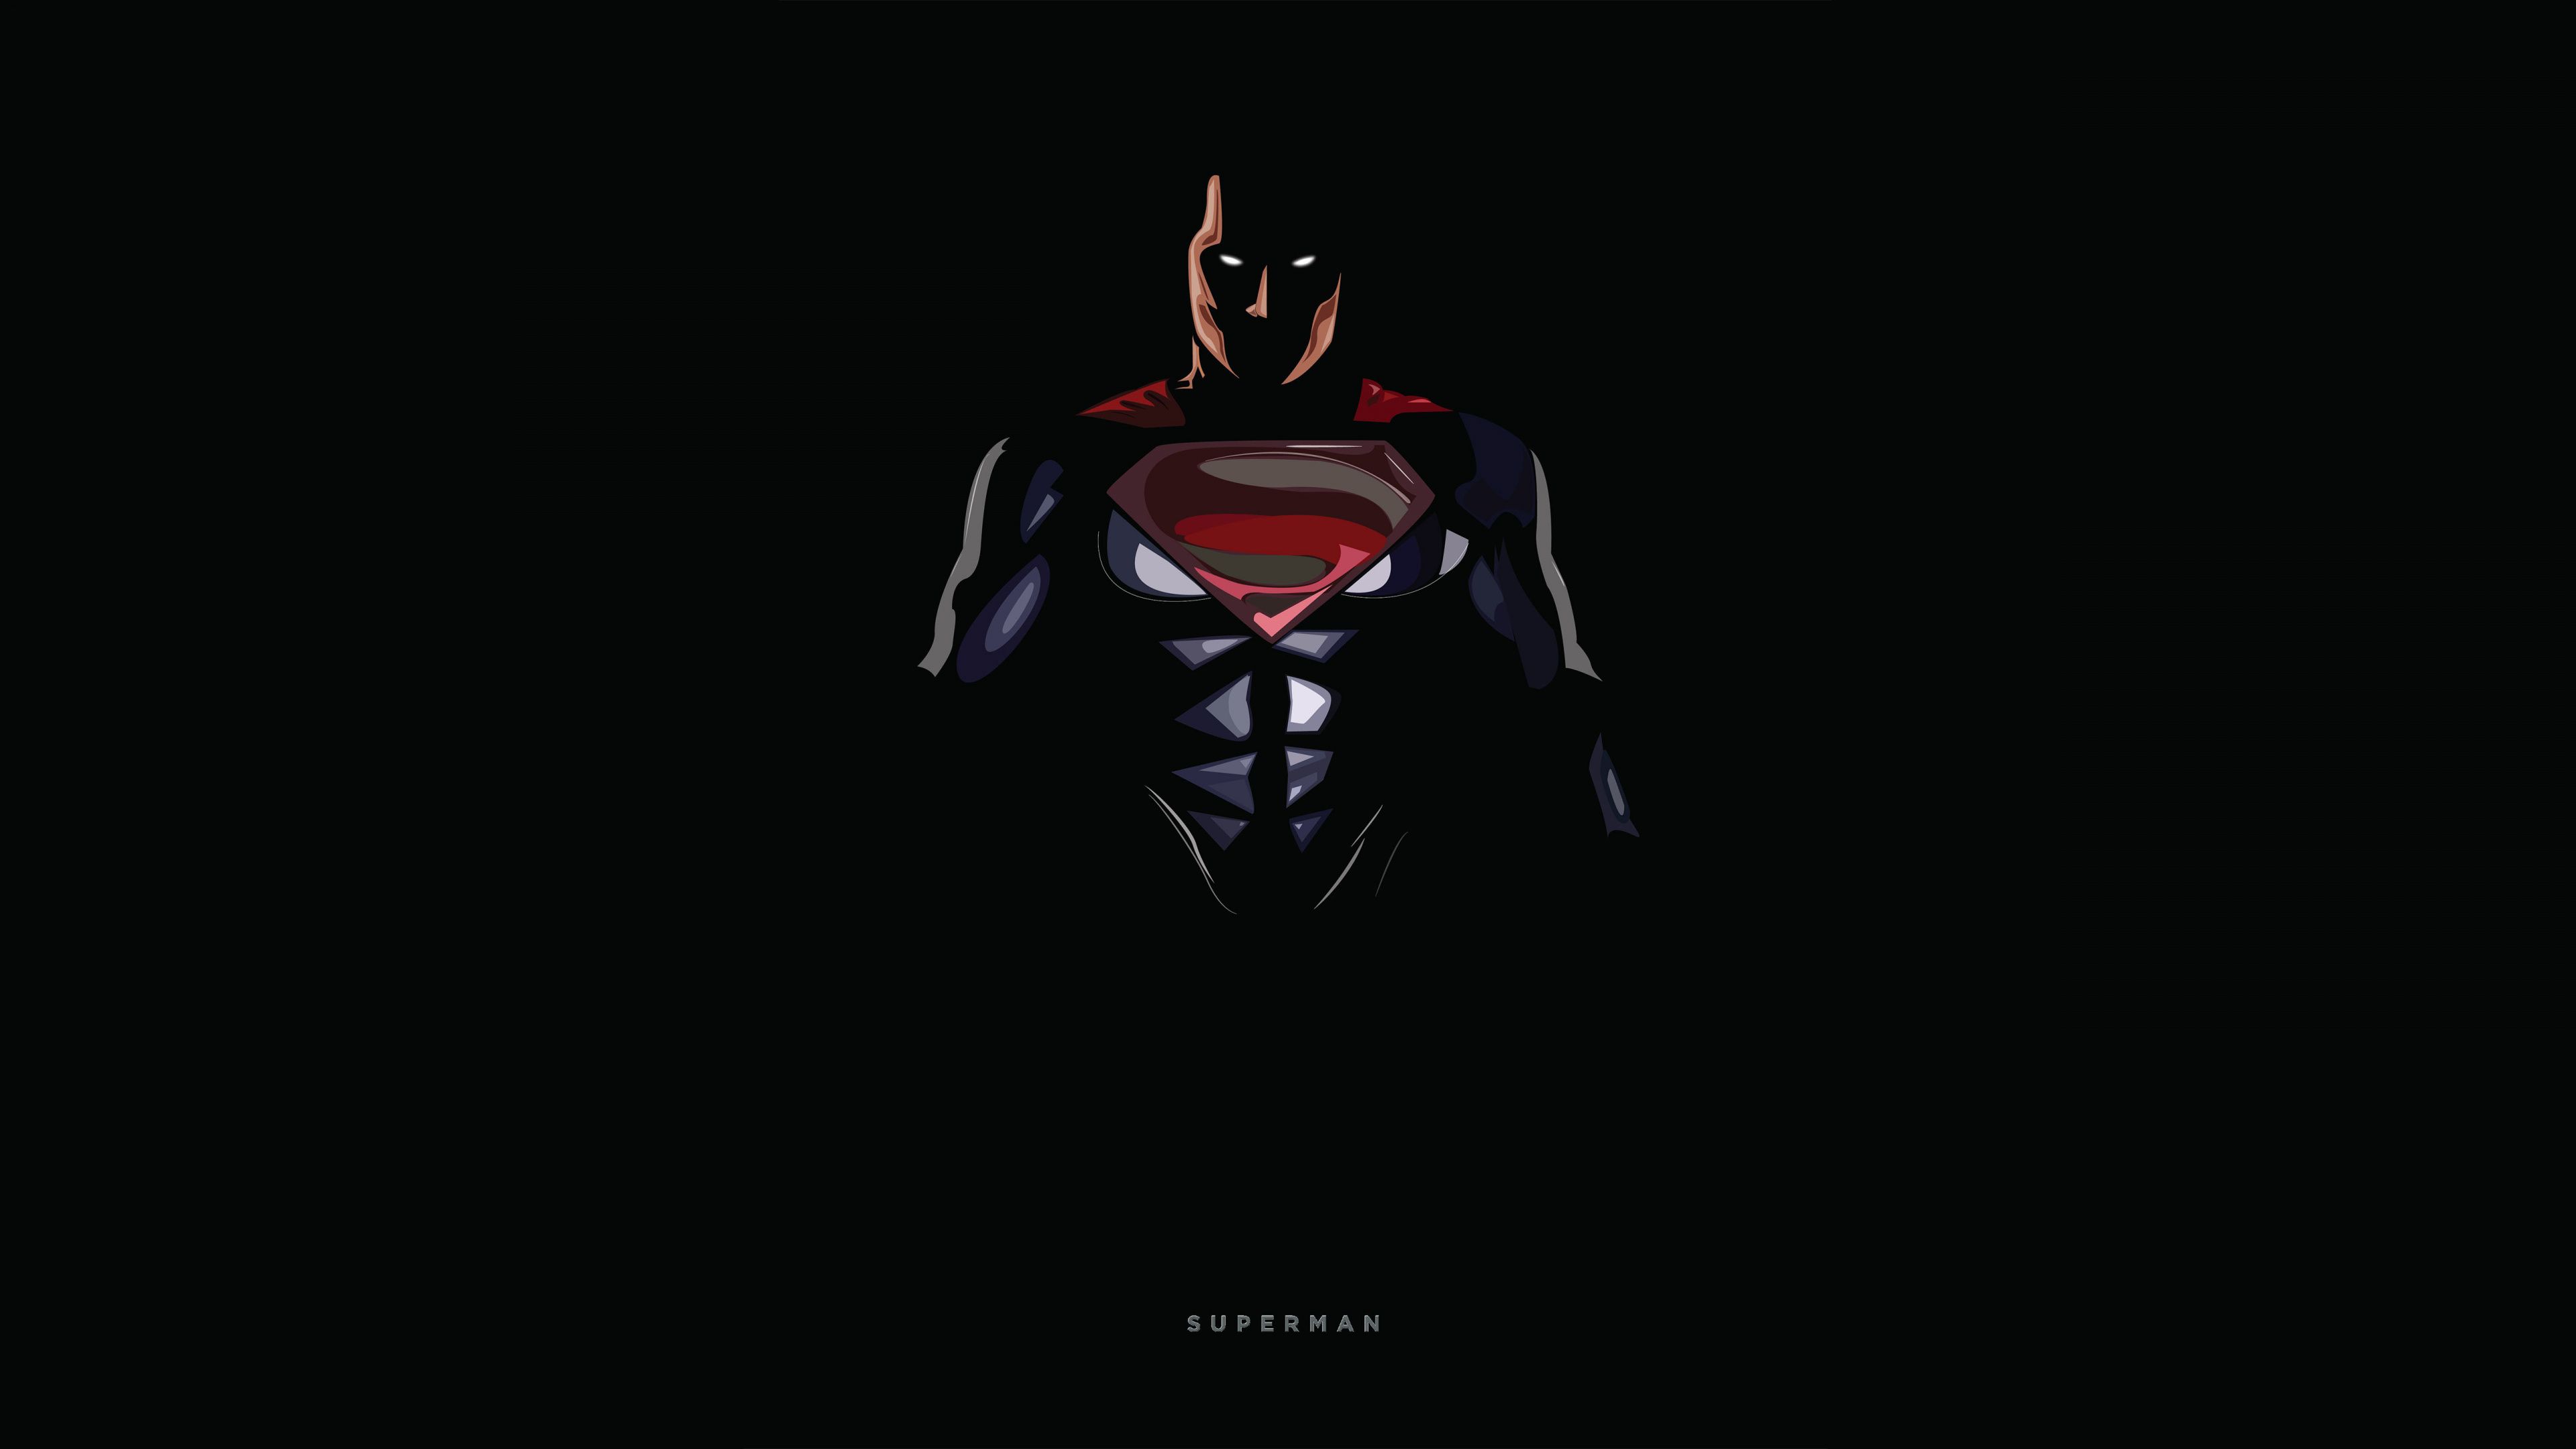 Supergirl DC-comics Black superman wallpaper | 1920x1080 | 83191 |  WallpaperUP